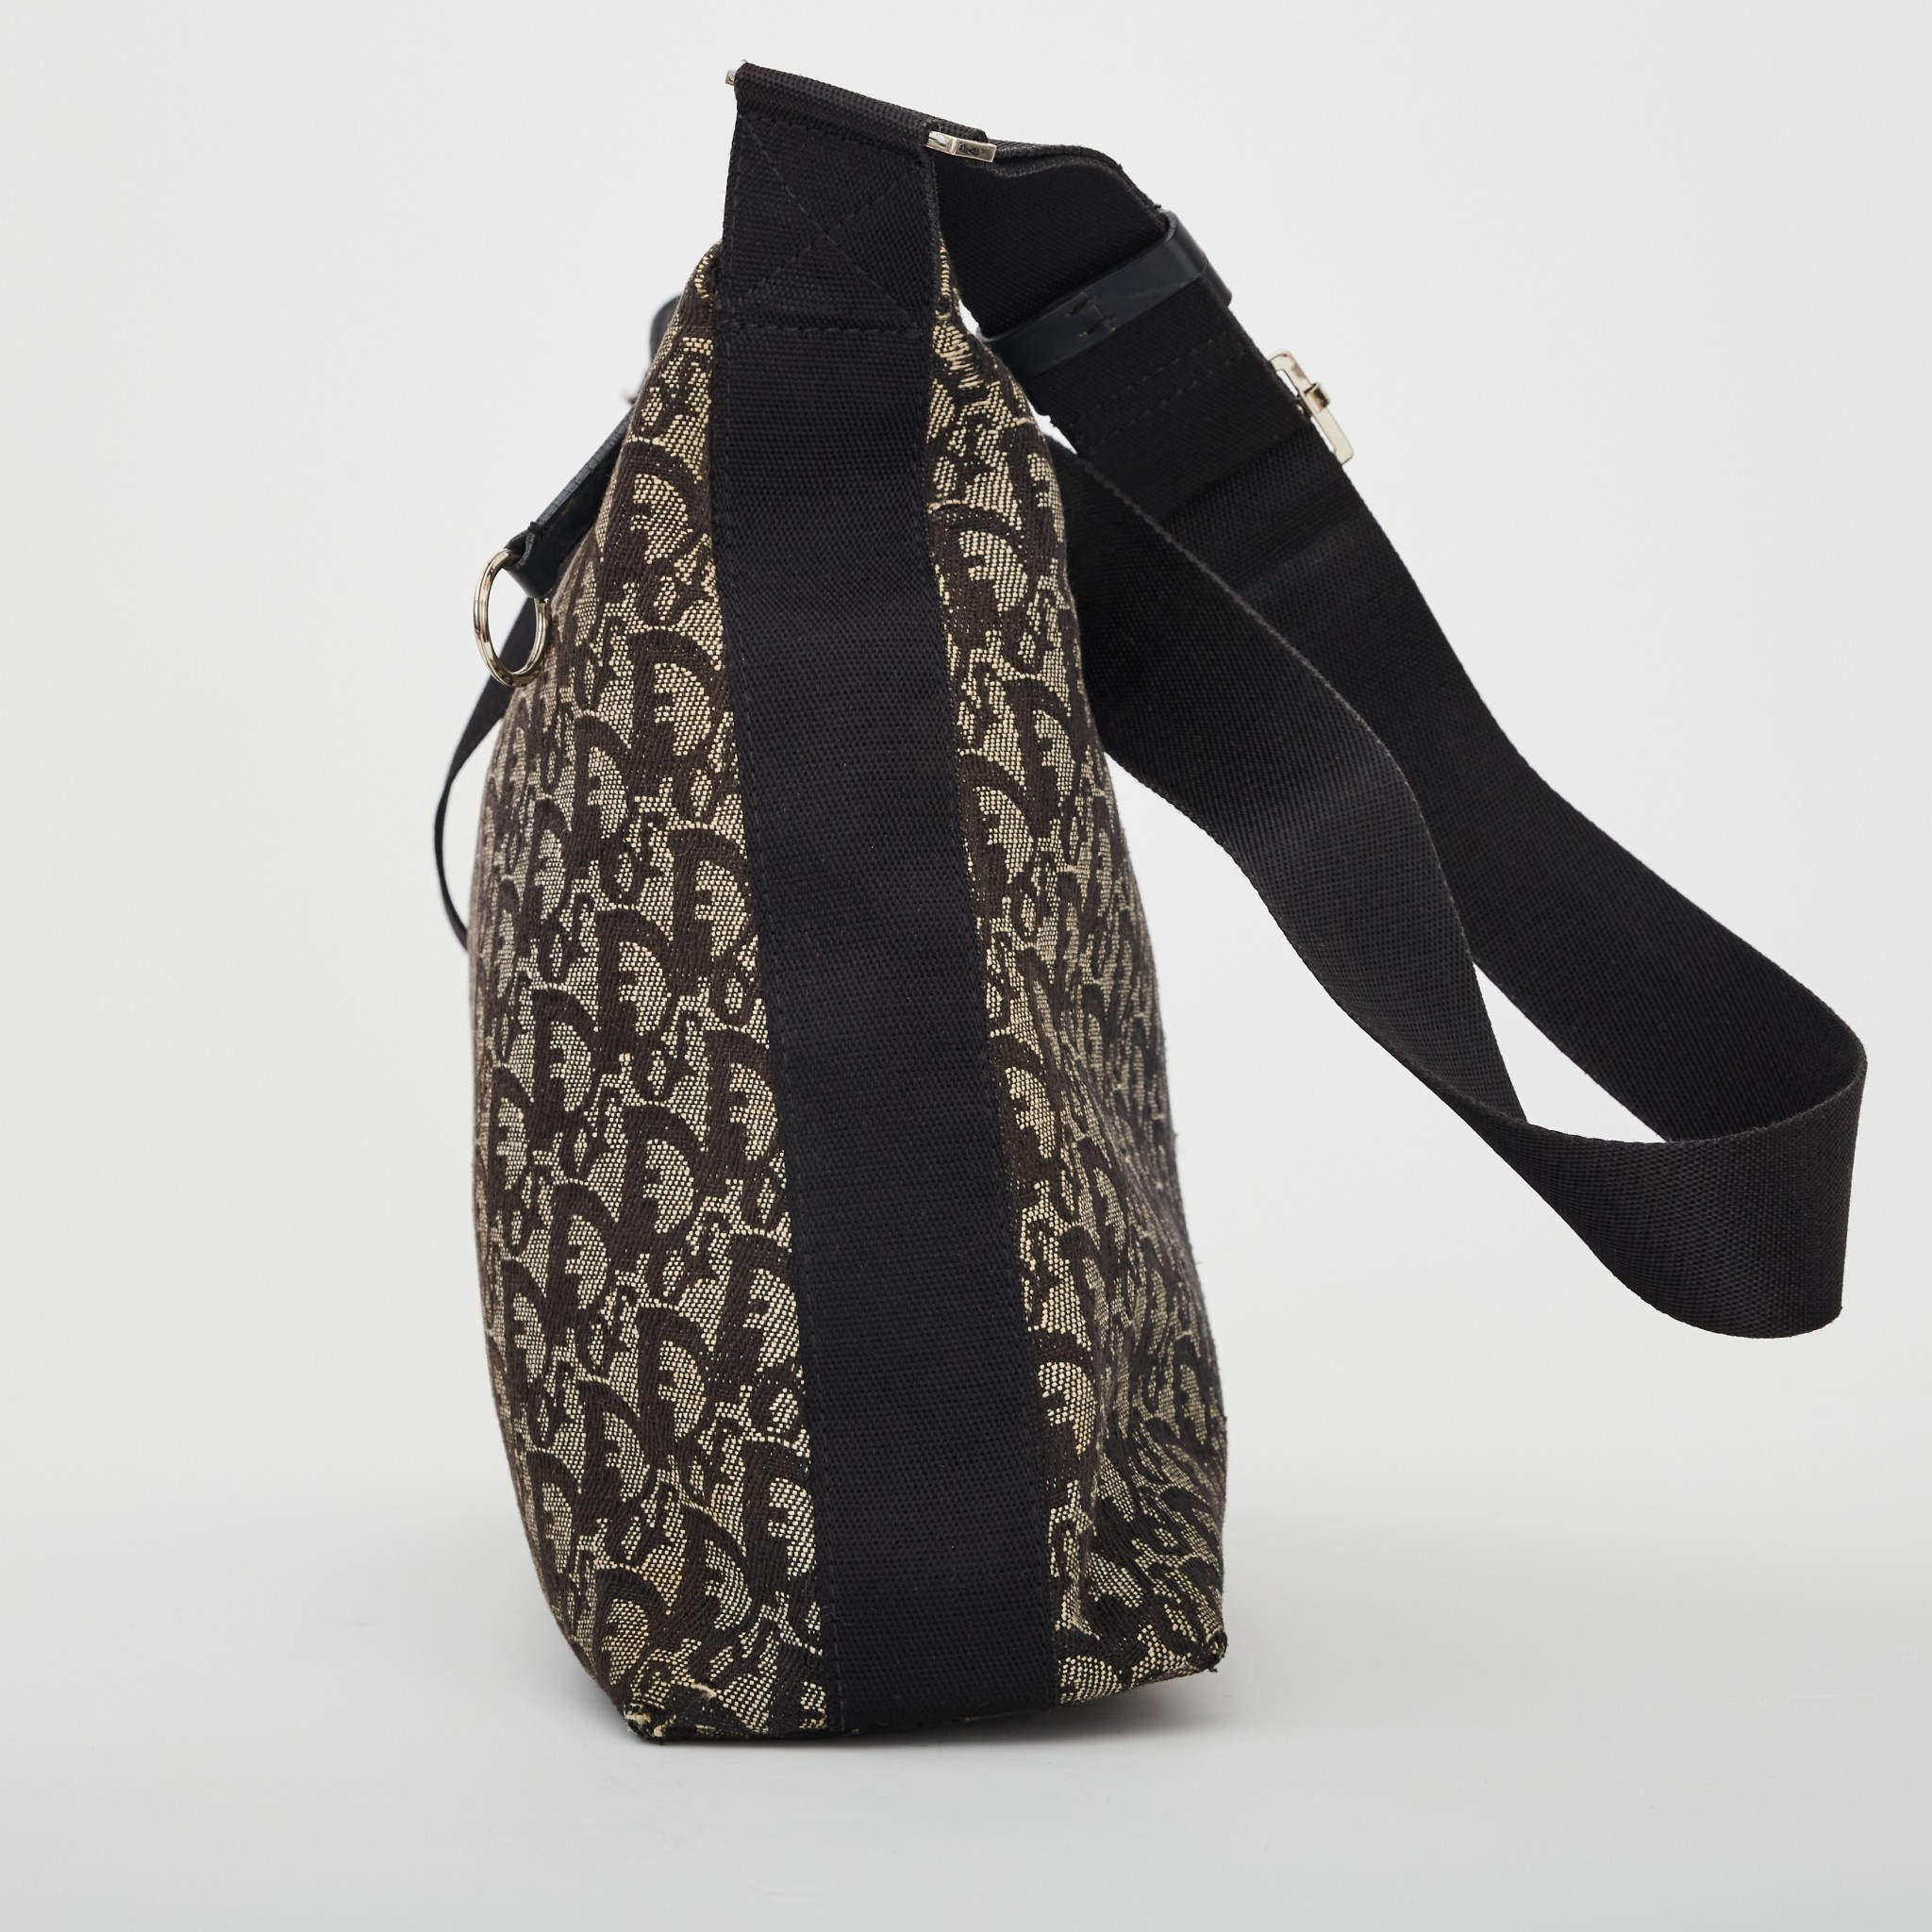 Christian Dior Trotter Shoulder Bag – THE M VNTG